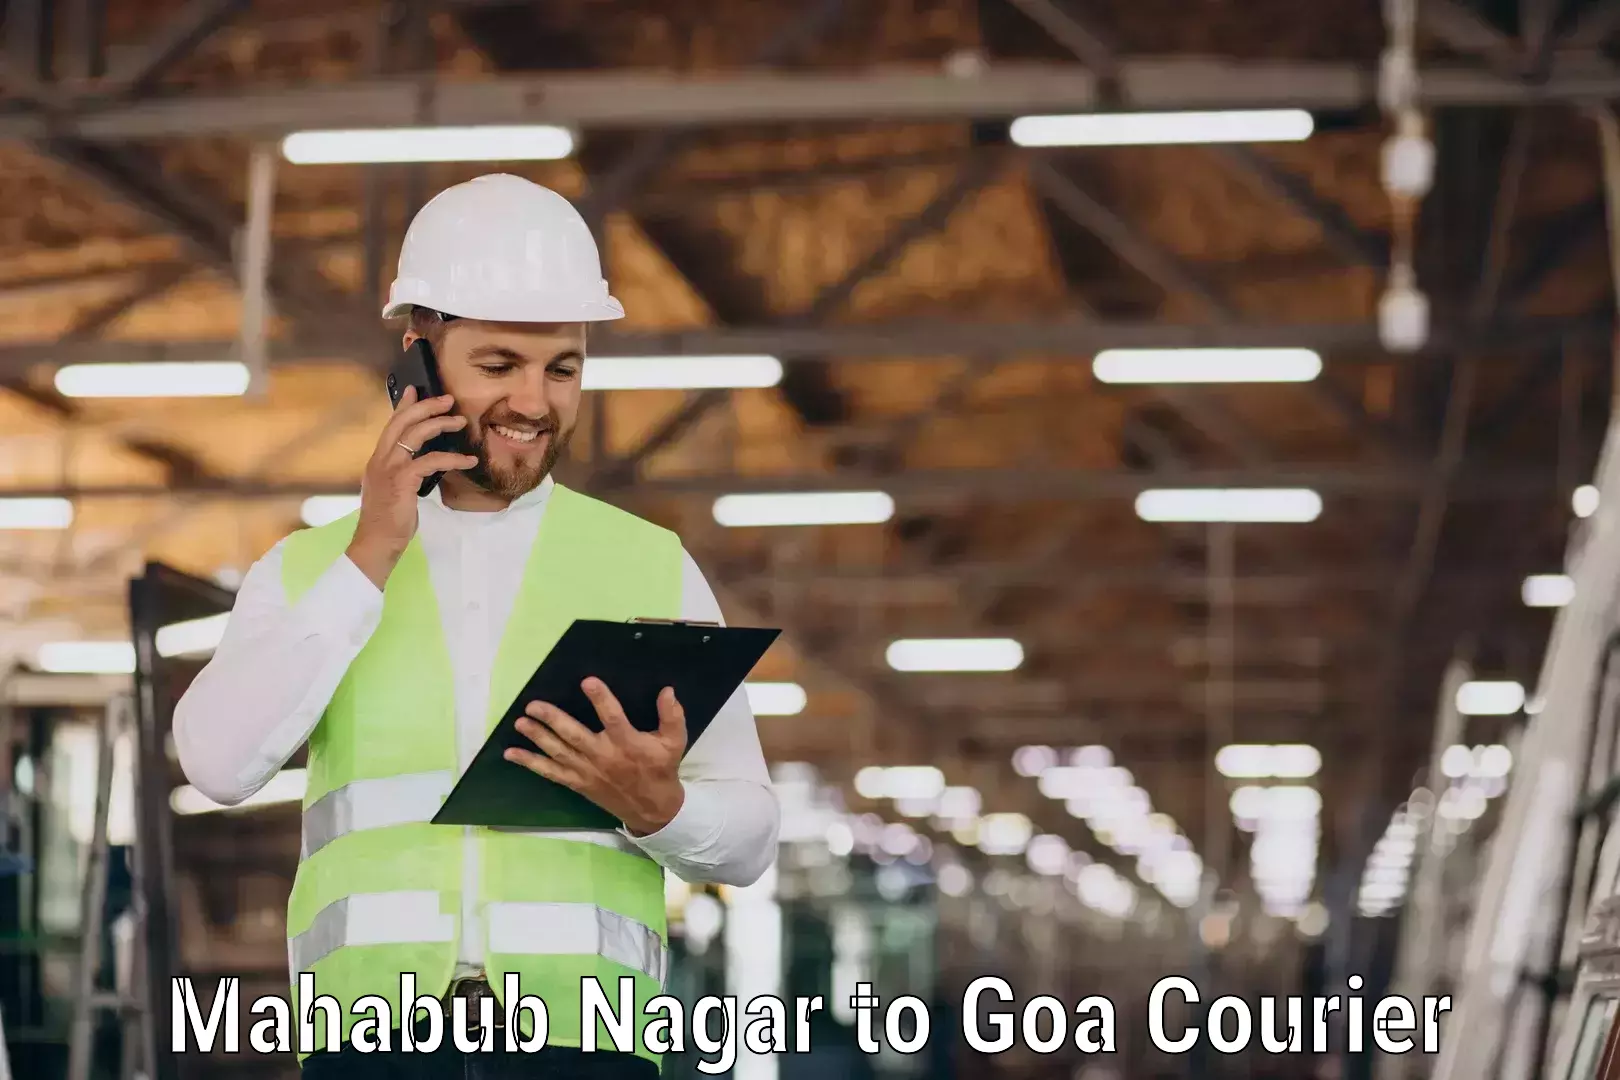 Nationwide courier service Mahabub Nagar to Goa